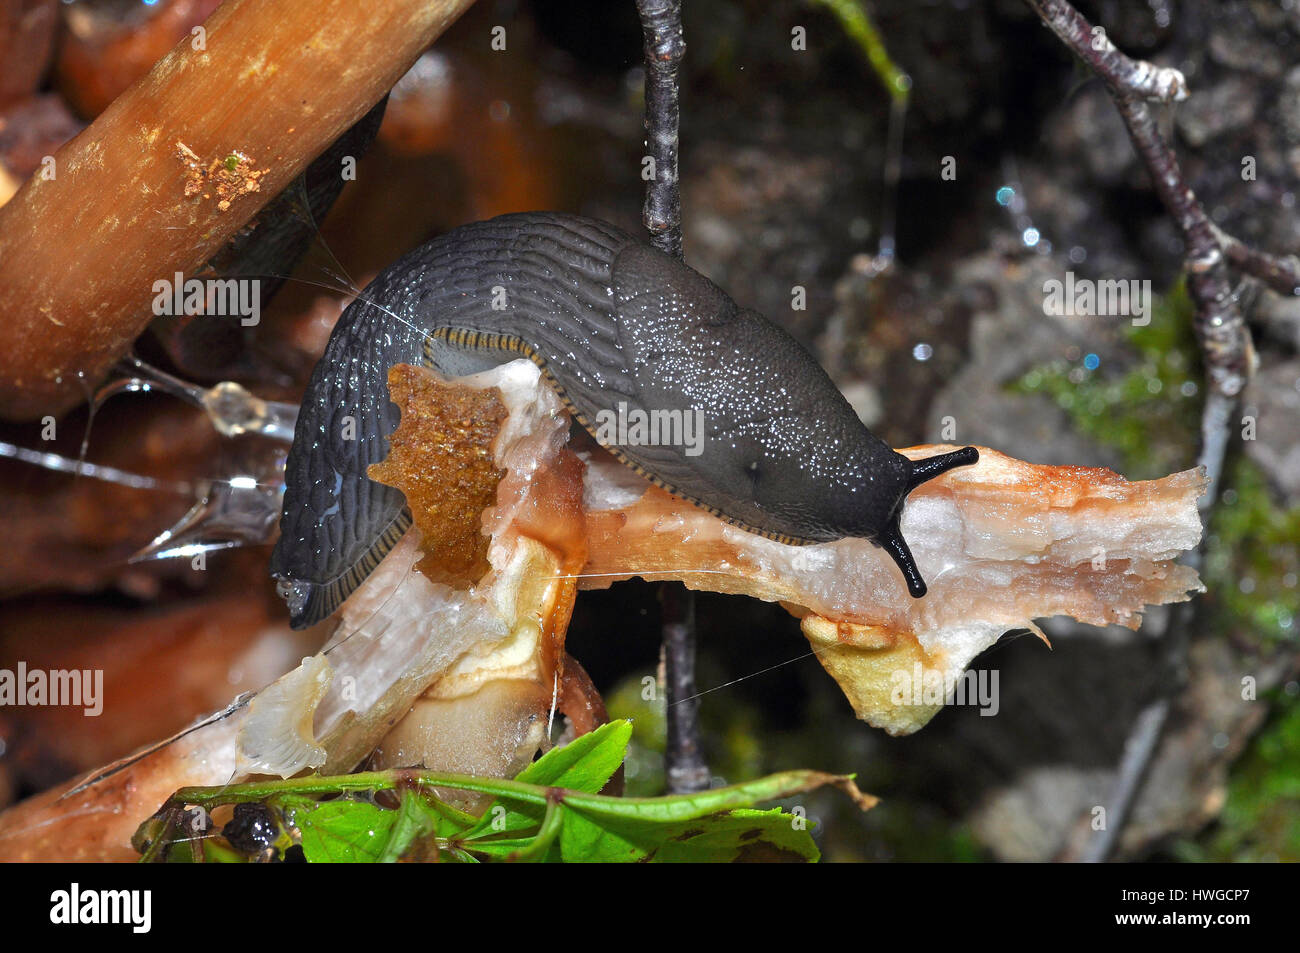 Black Slug (Arion ater) feeding on a mushroom Stock Photo